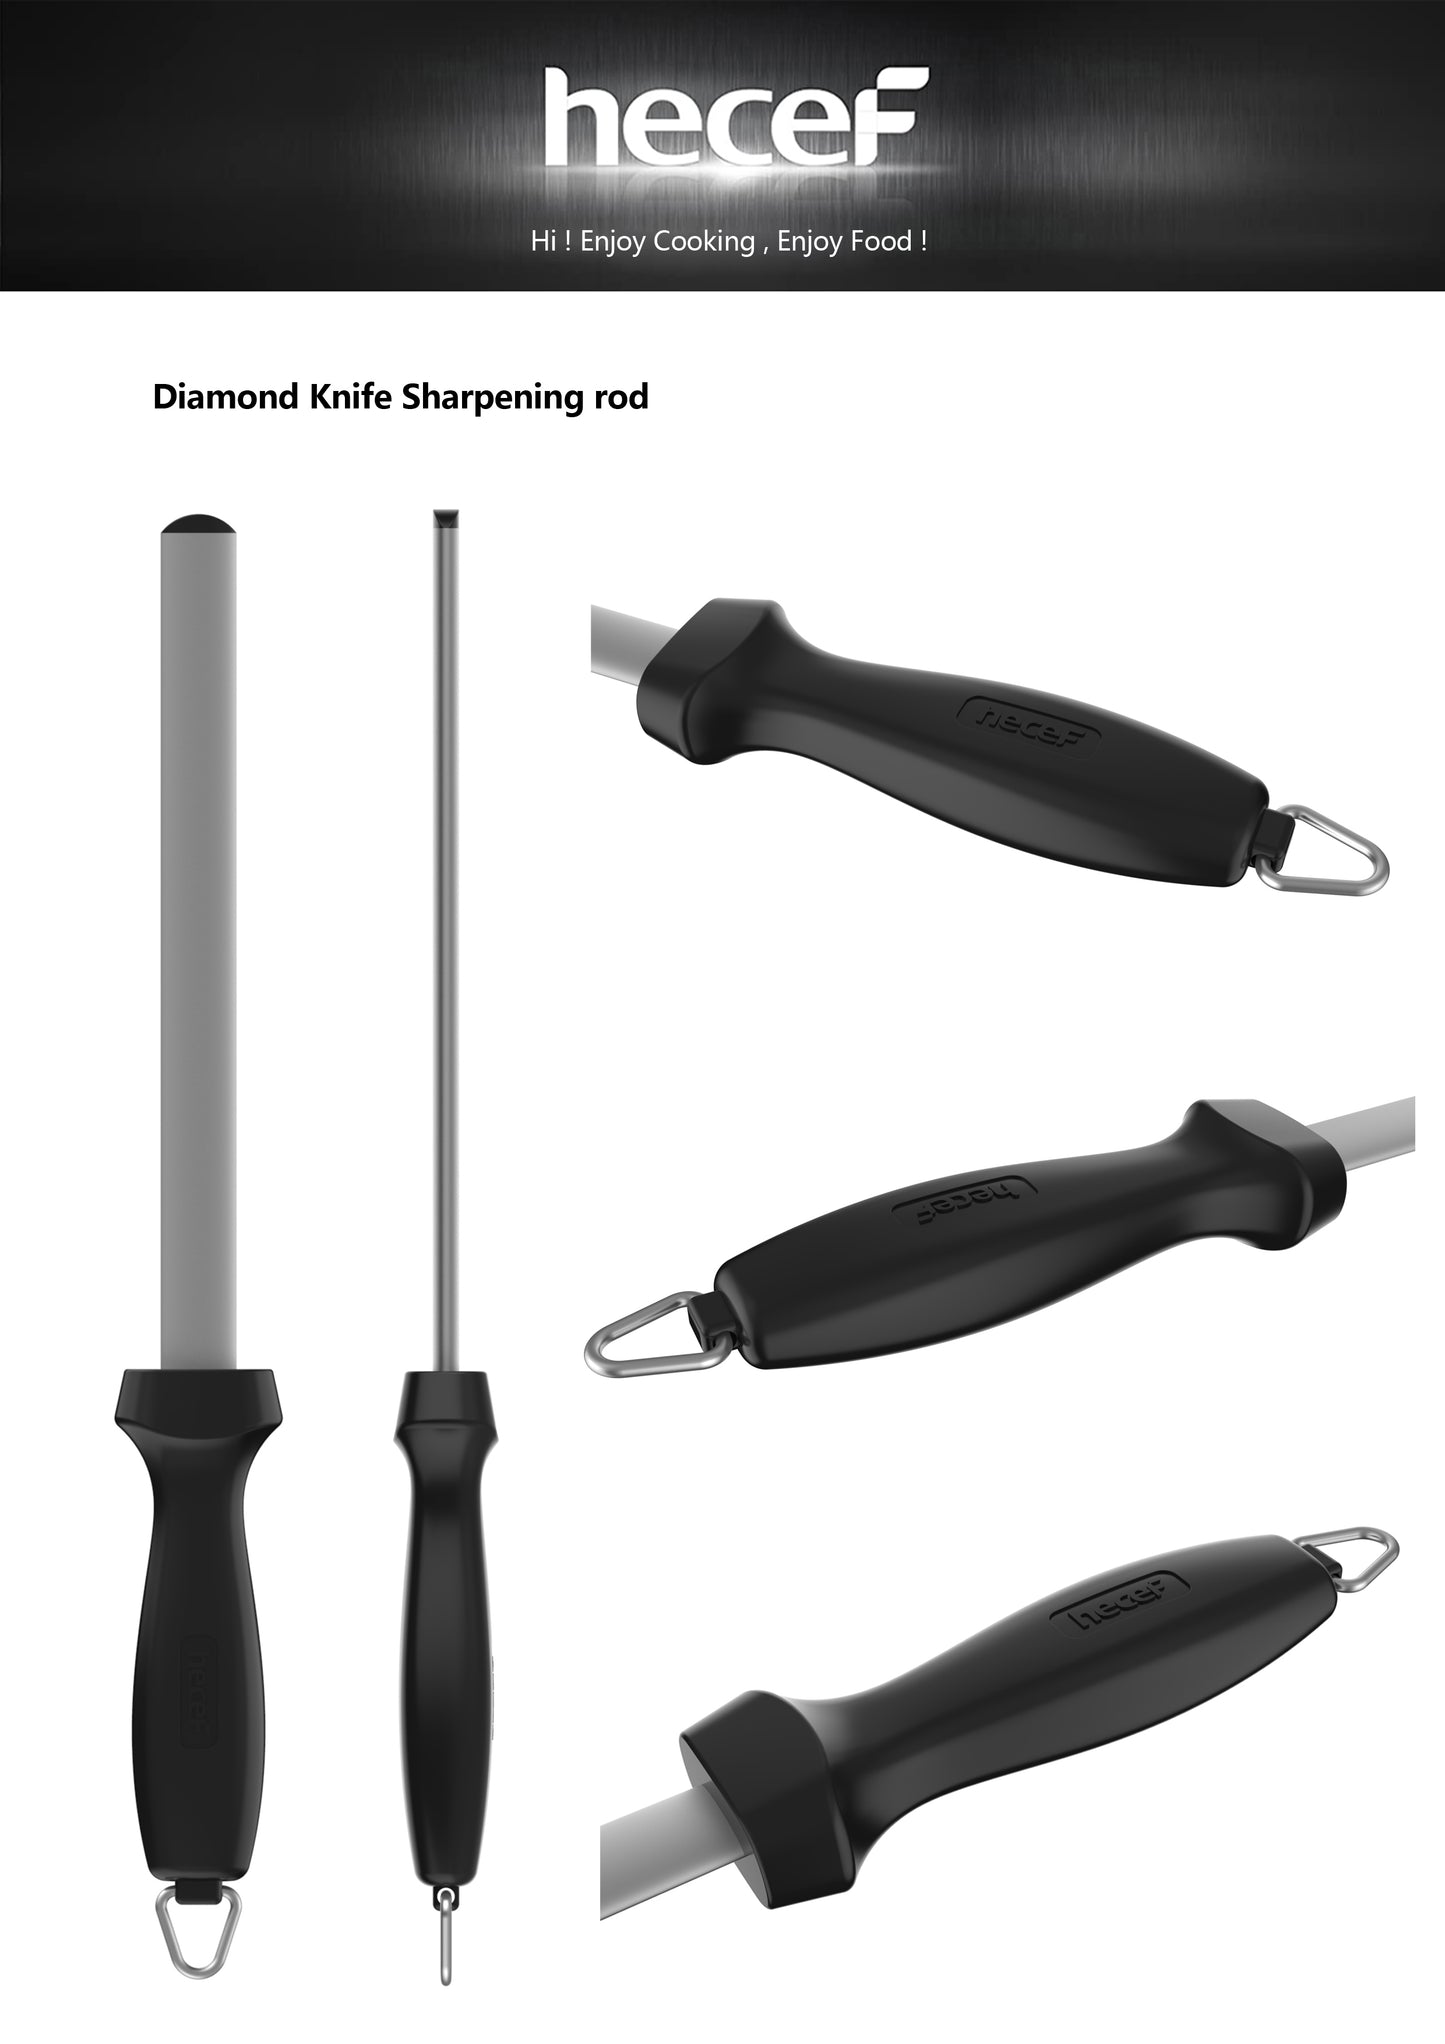 Sharpening rod - Hecef Kitchen